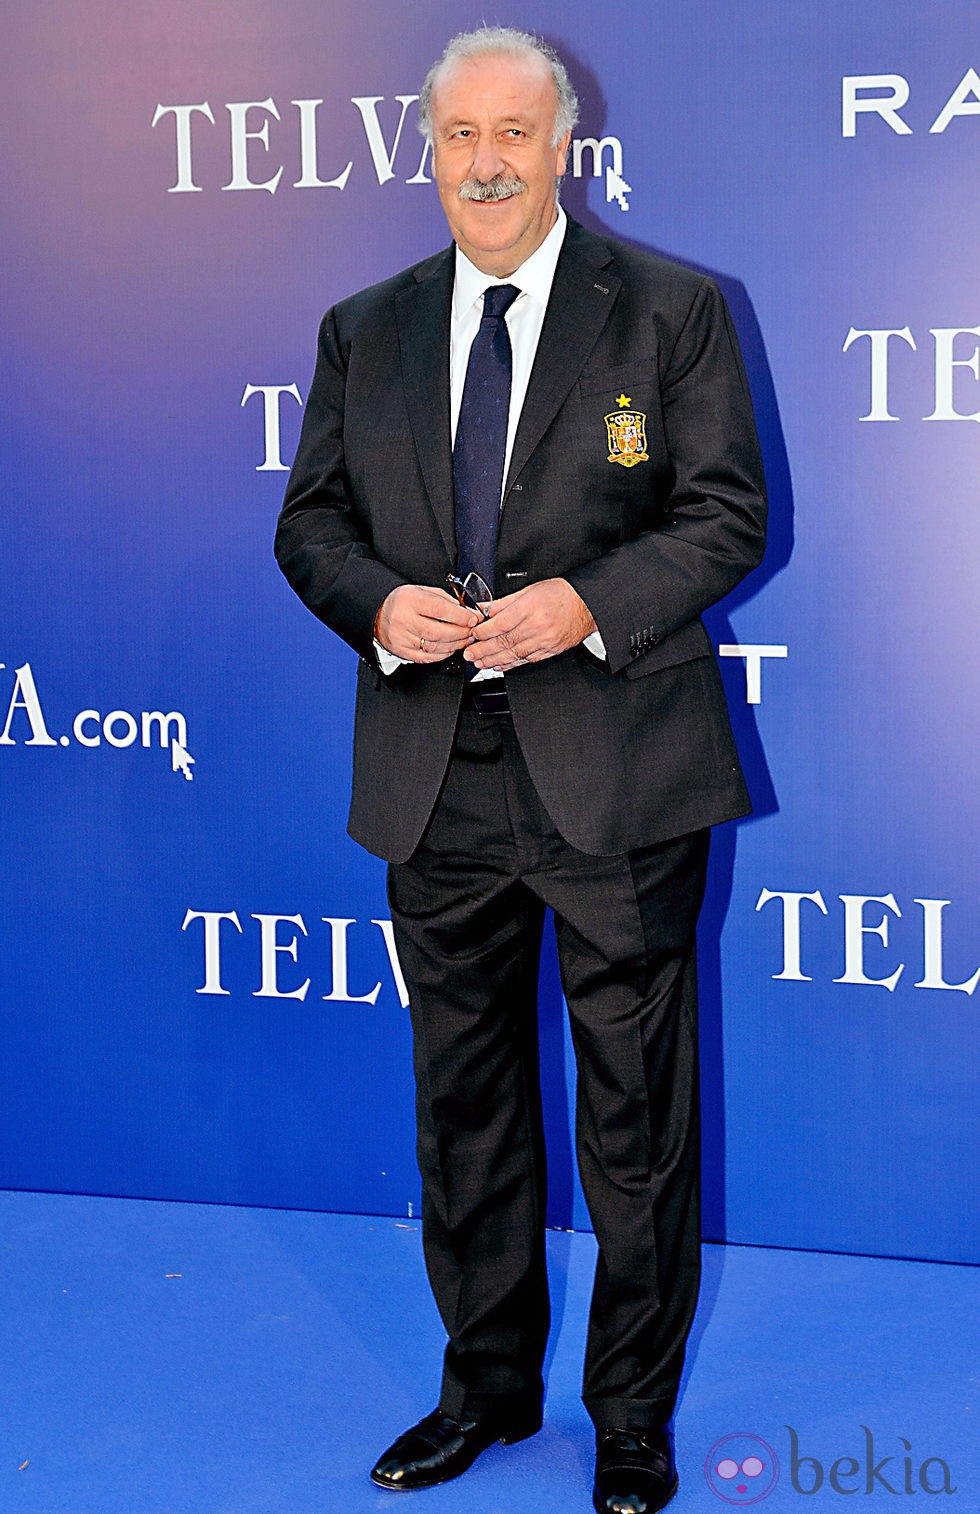 Vicente del Bosque en los Premios Telva de Arte, Ciencia y Deportes 2012